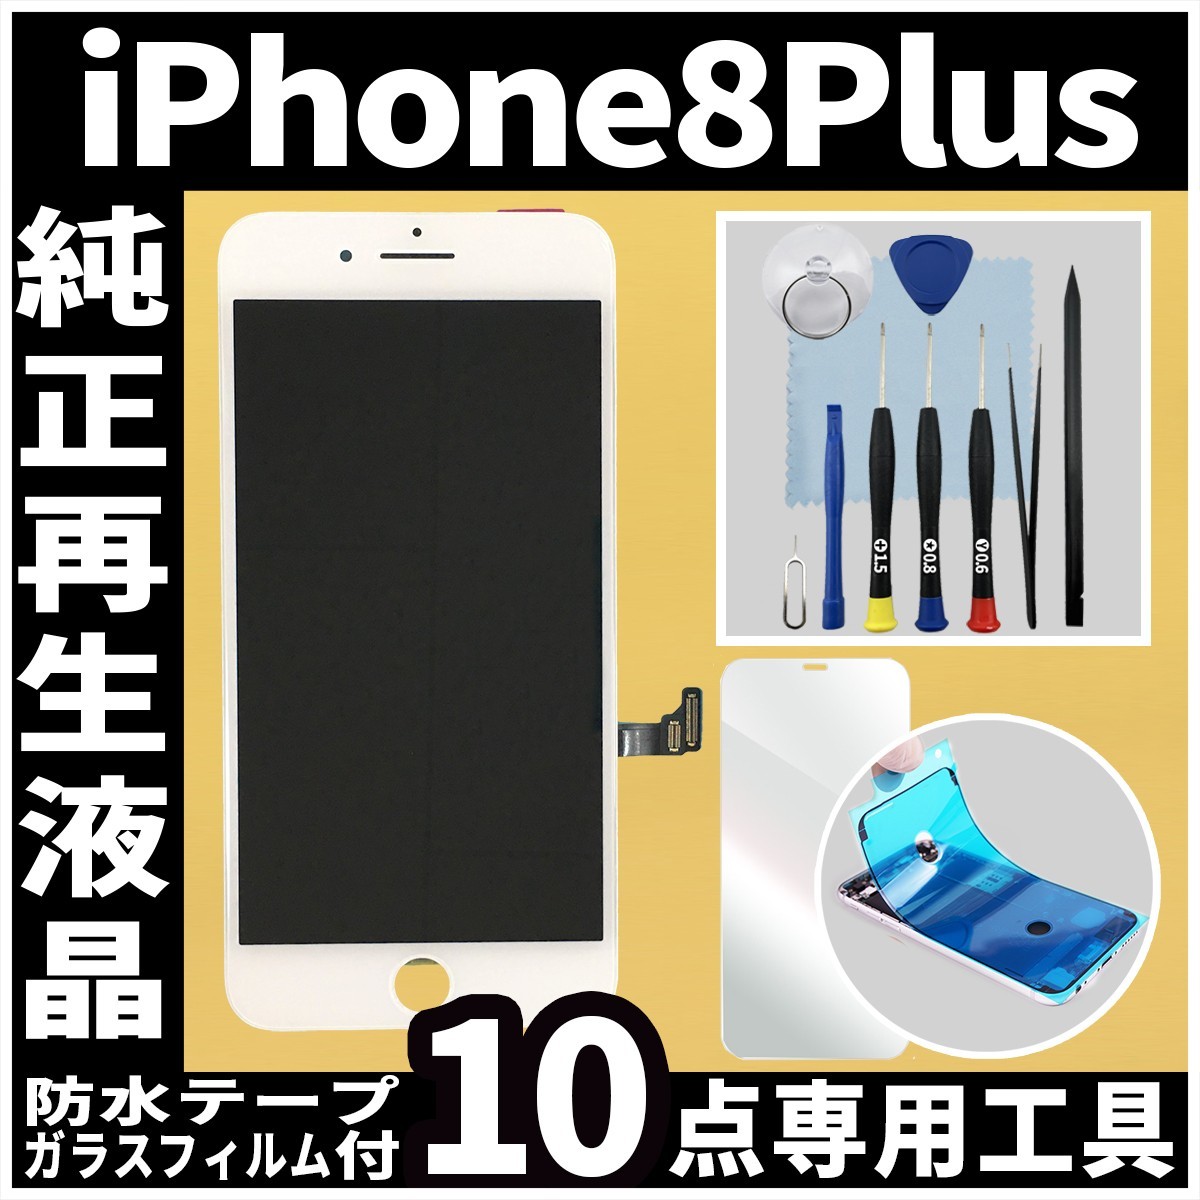 純正再生品 iPhone8plus フロントパネル 白 純正液晶 自社再生 業者 LCD 交換 リペア 画面割れ iphone ガラス割れ 防水テープ 